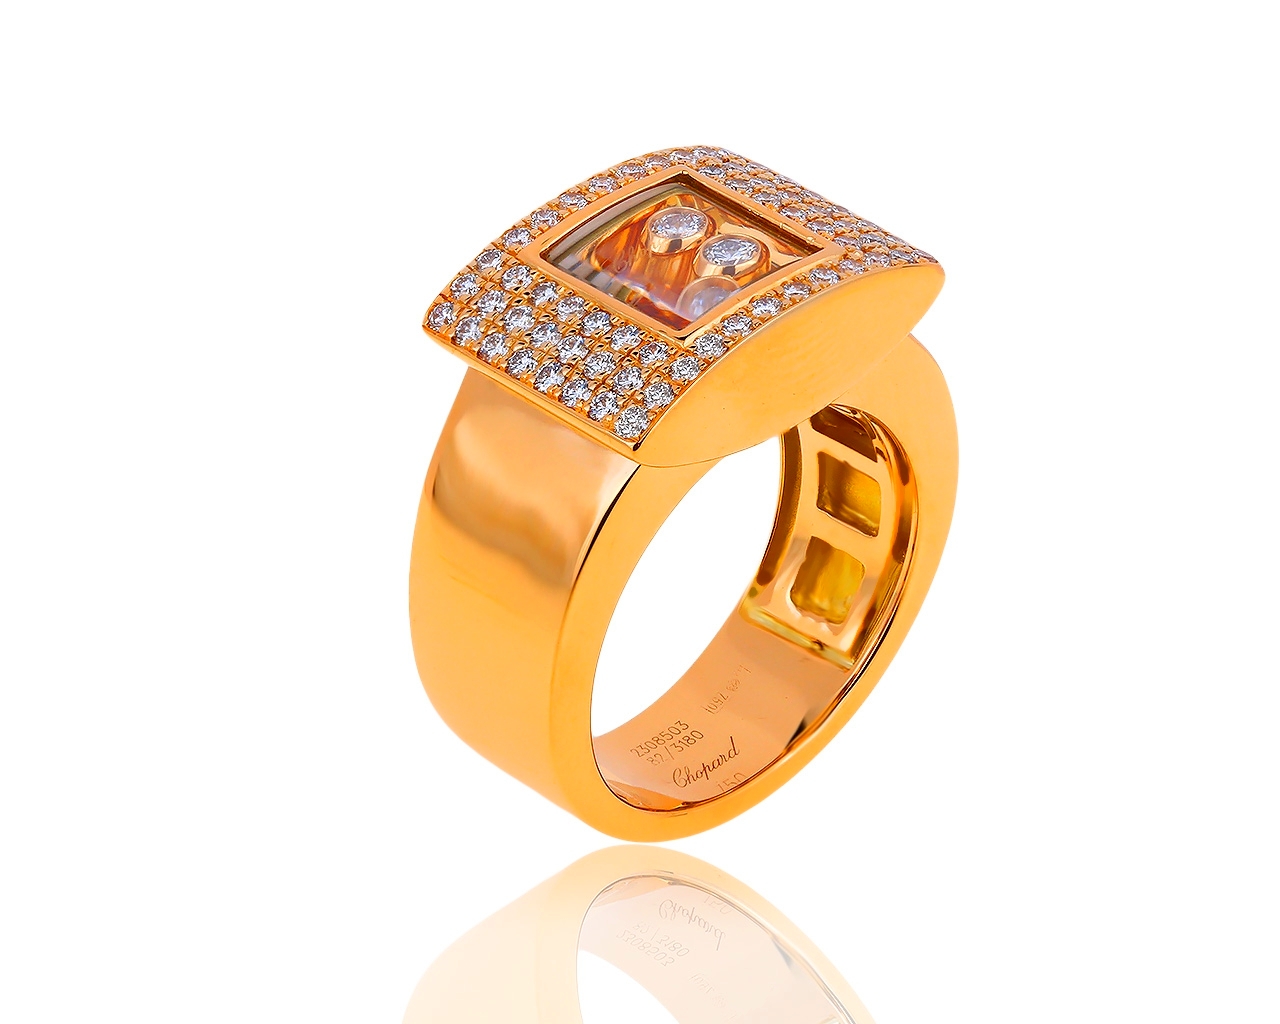 Оригинальное золотое кольцо с бриллиантами 0.75ct Chopard